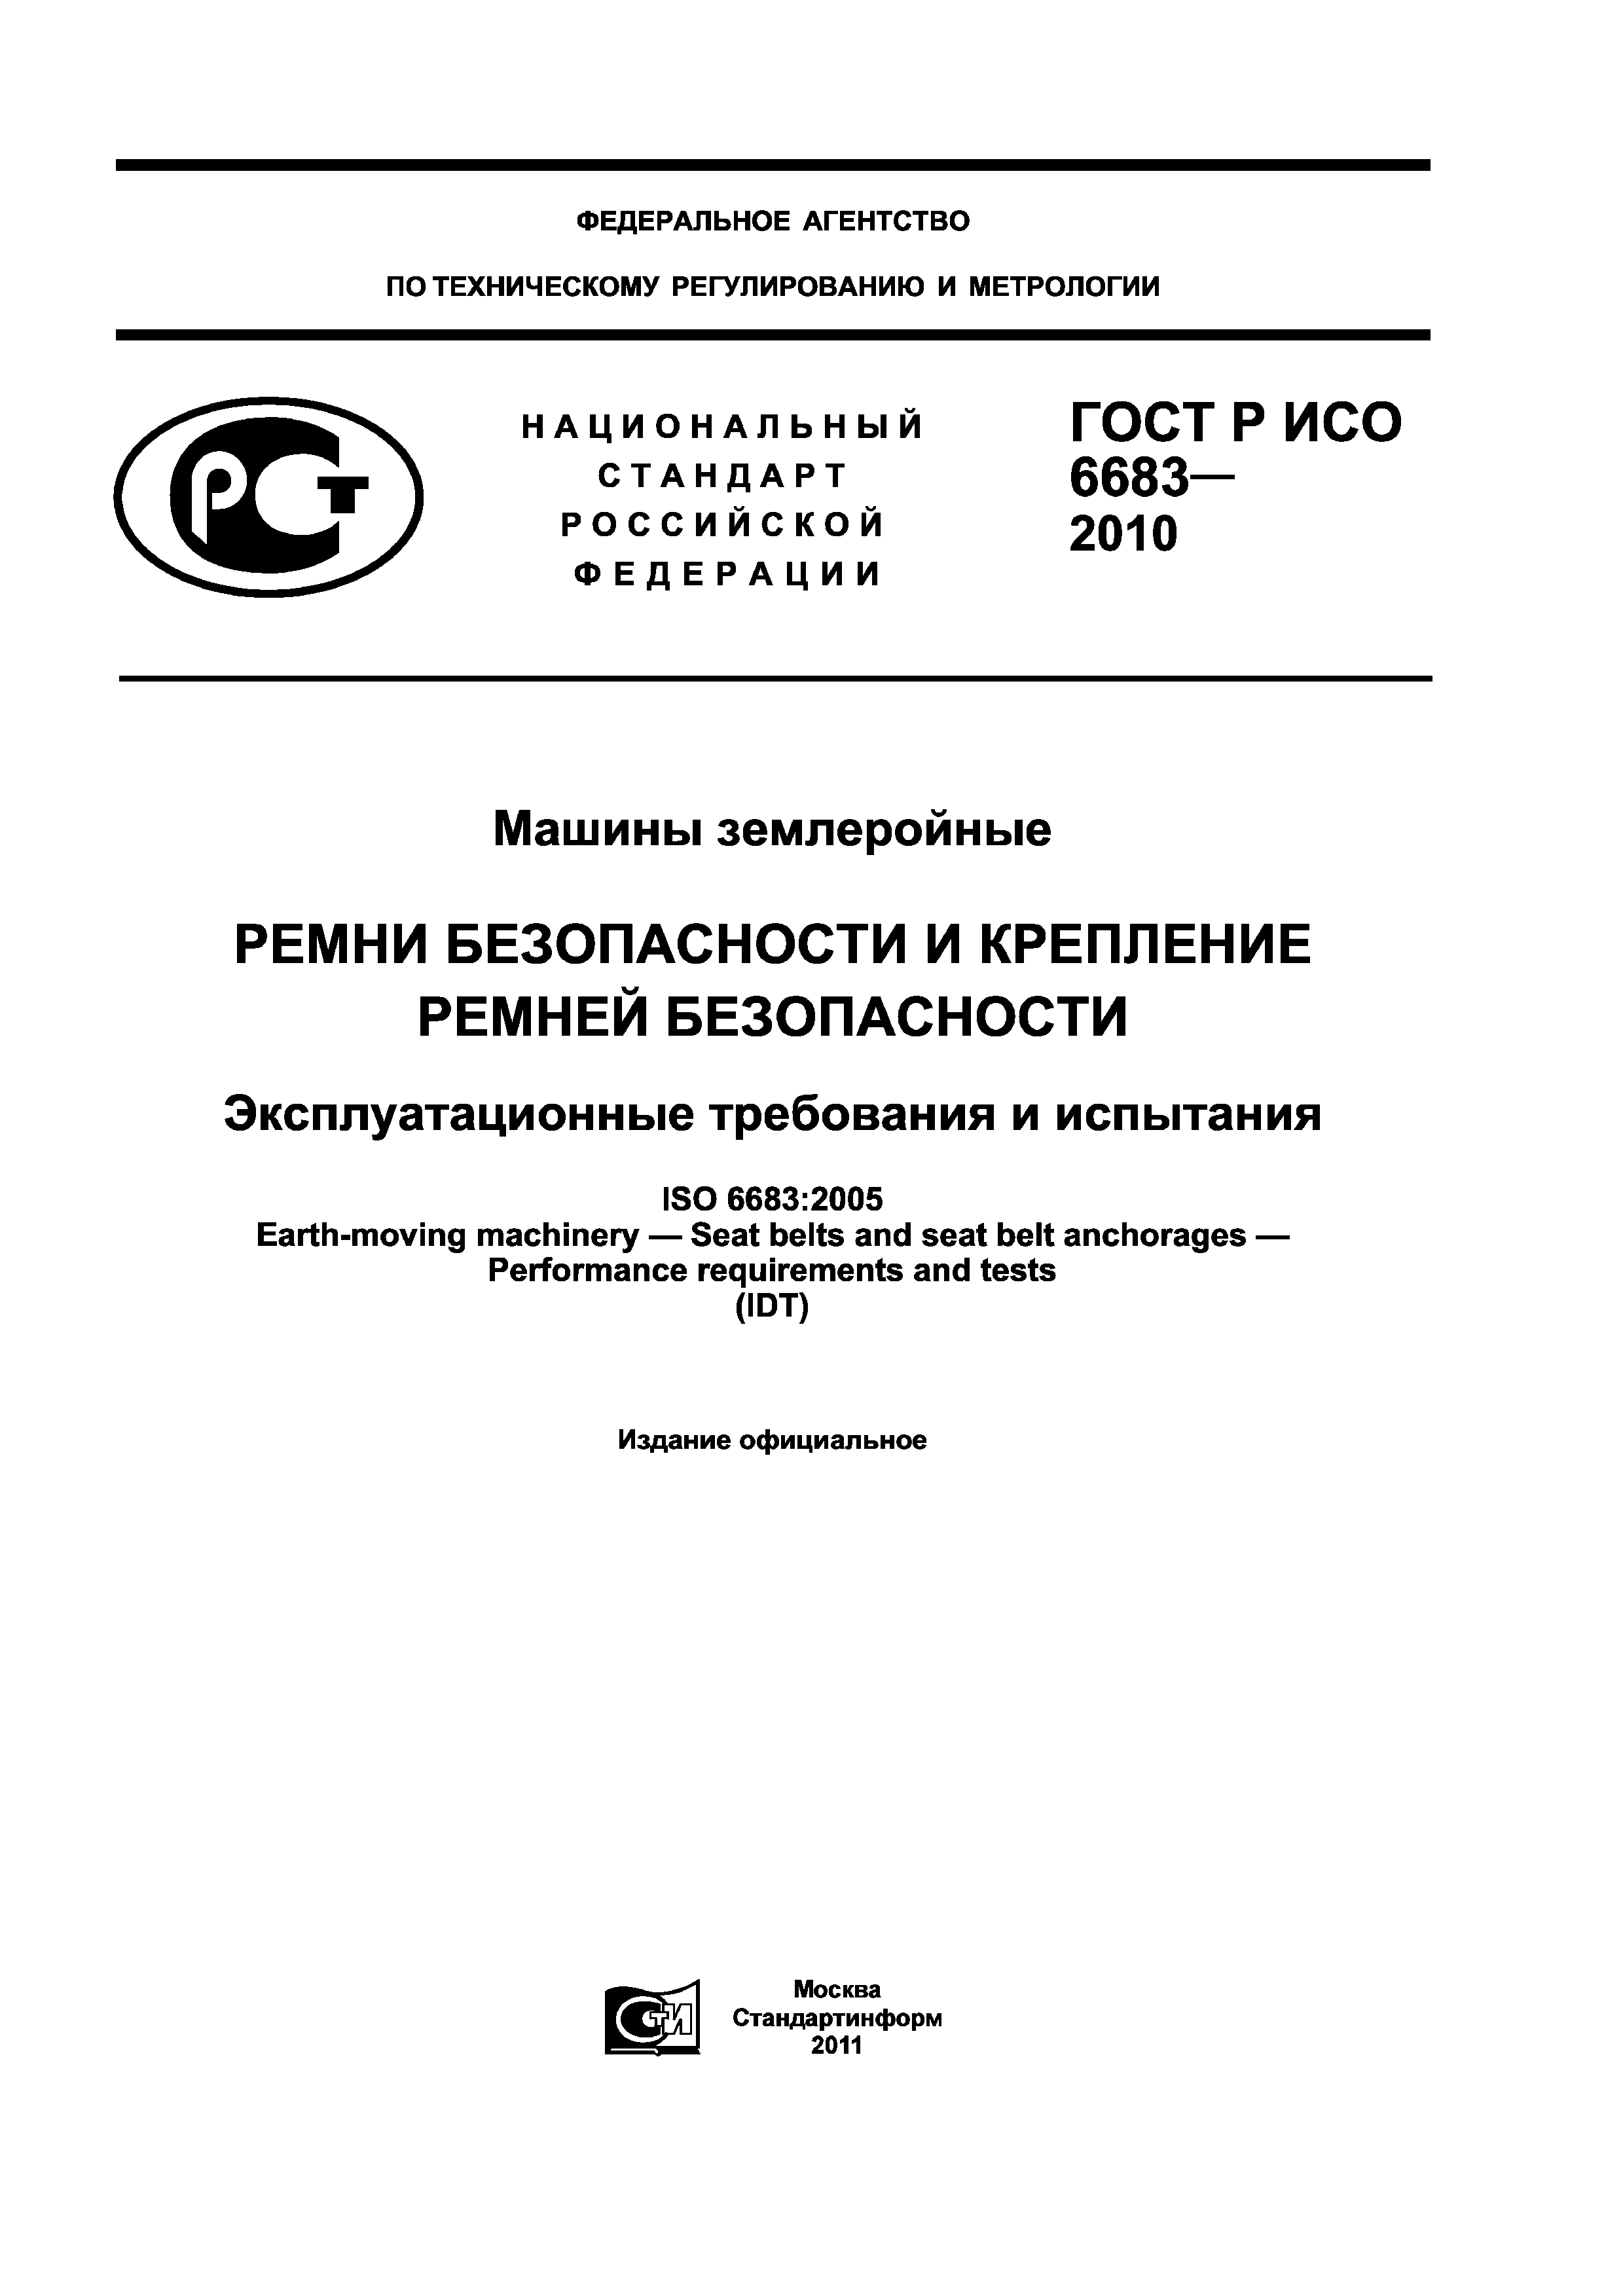 ГОСТ Р ИСО 6683-2010